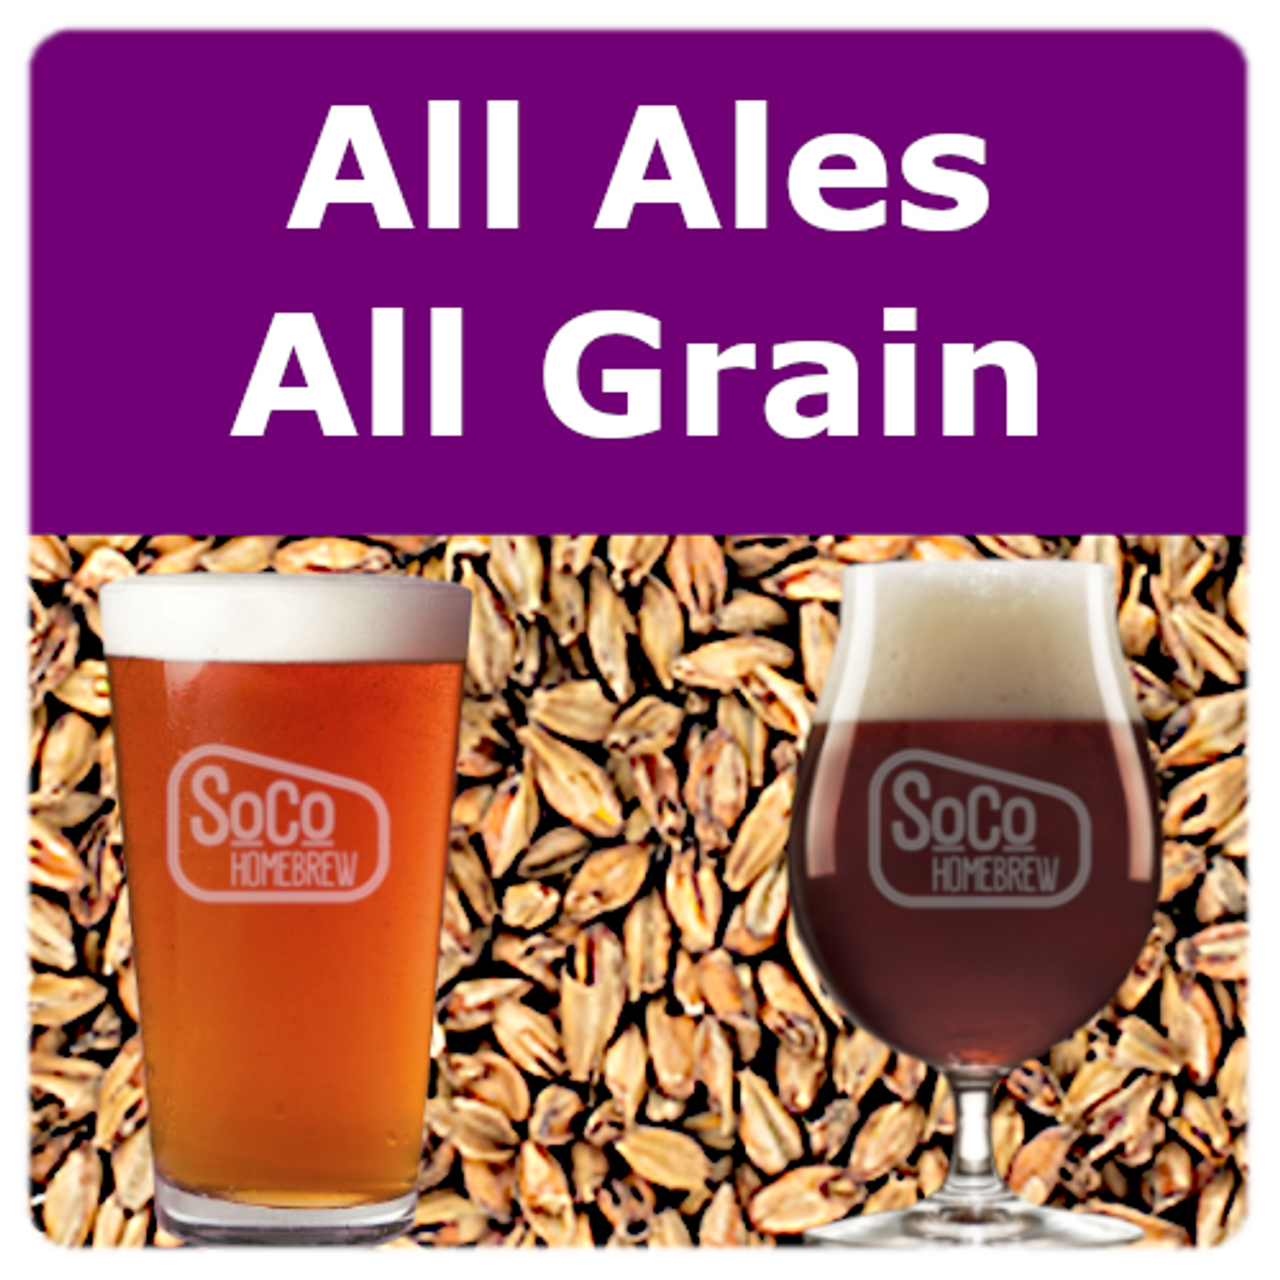 All Ales - All Grain